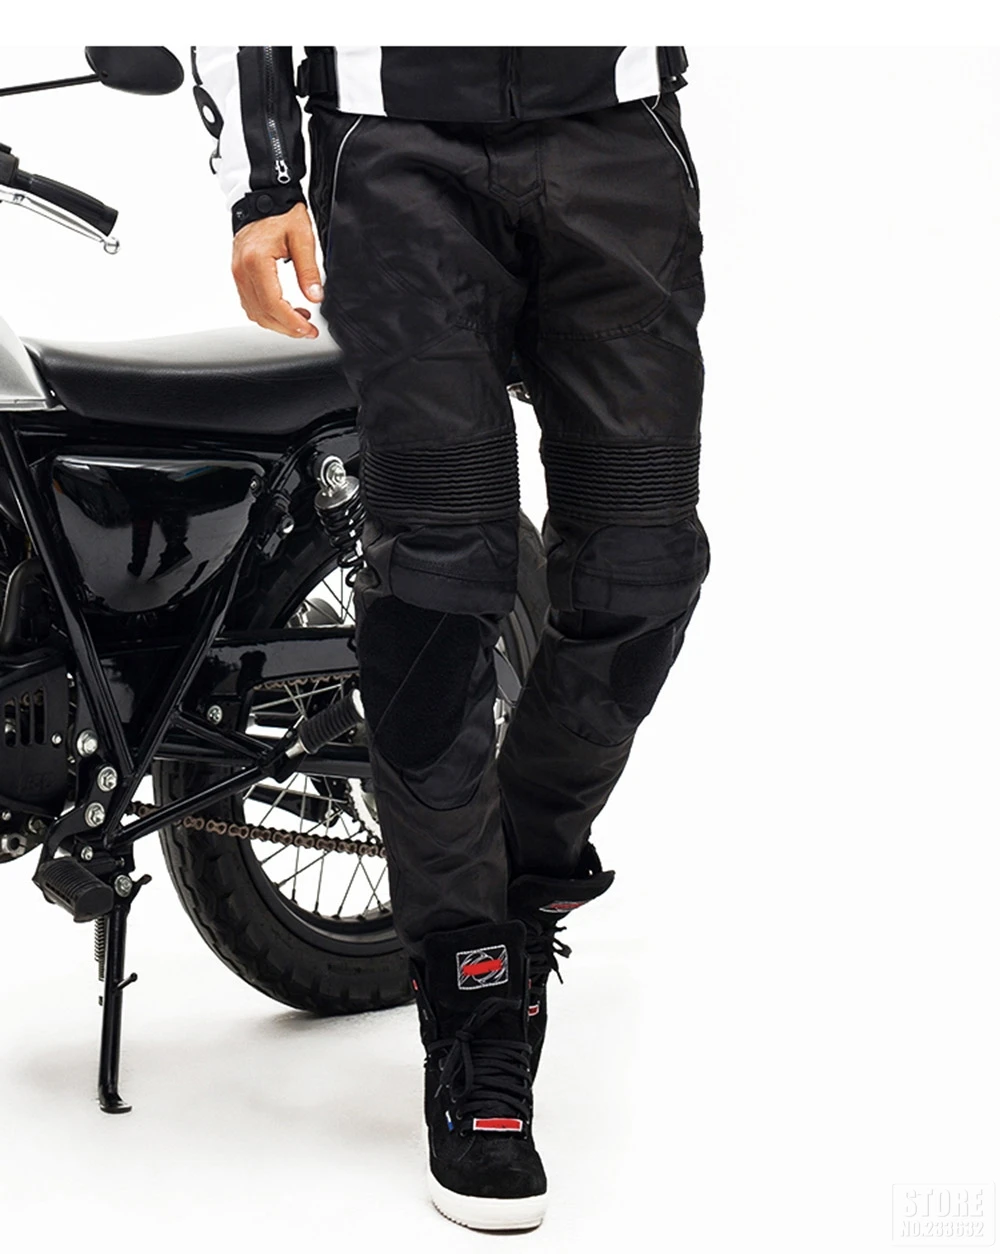 DUHAN мотоциклетные штаны Защитное снаряжение мото брюки мужские мотоциклетные Брюки Штаны для мотокросса со съемным протектором